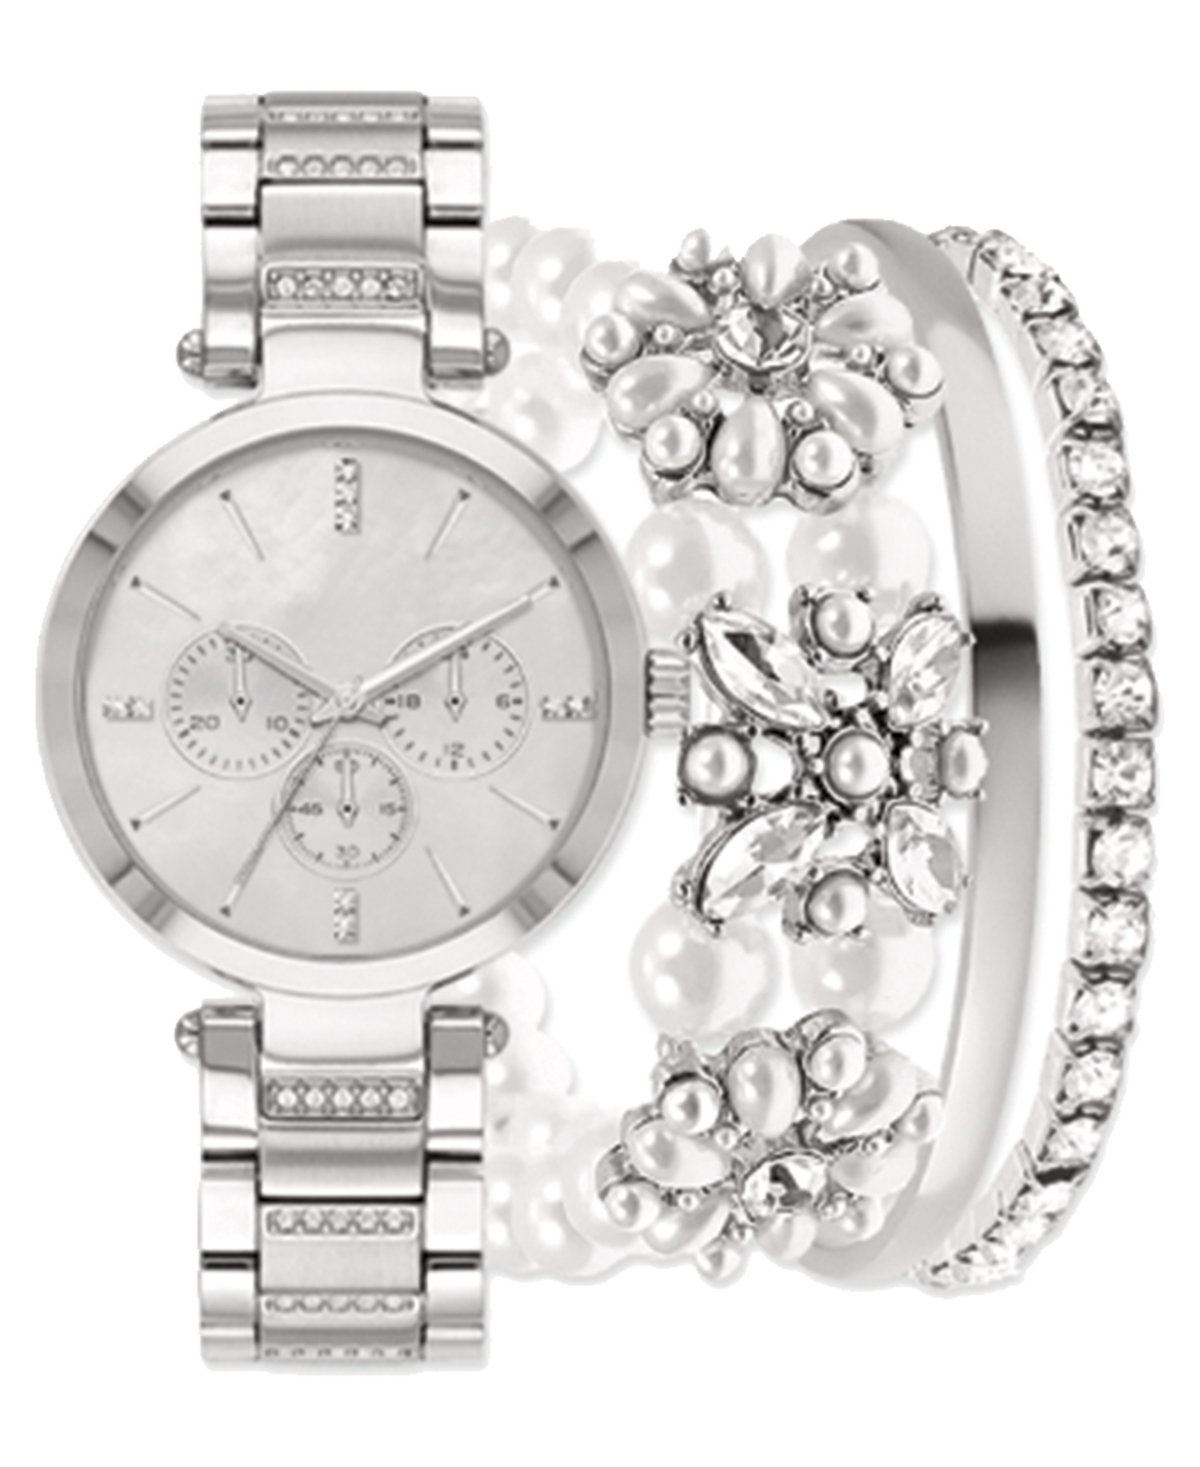 Women's Silver-Tone Metal Alloy Bracelet Watch 34mm Gift Set - Silver